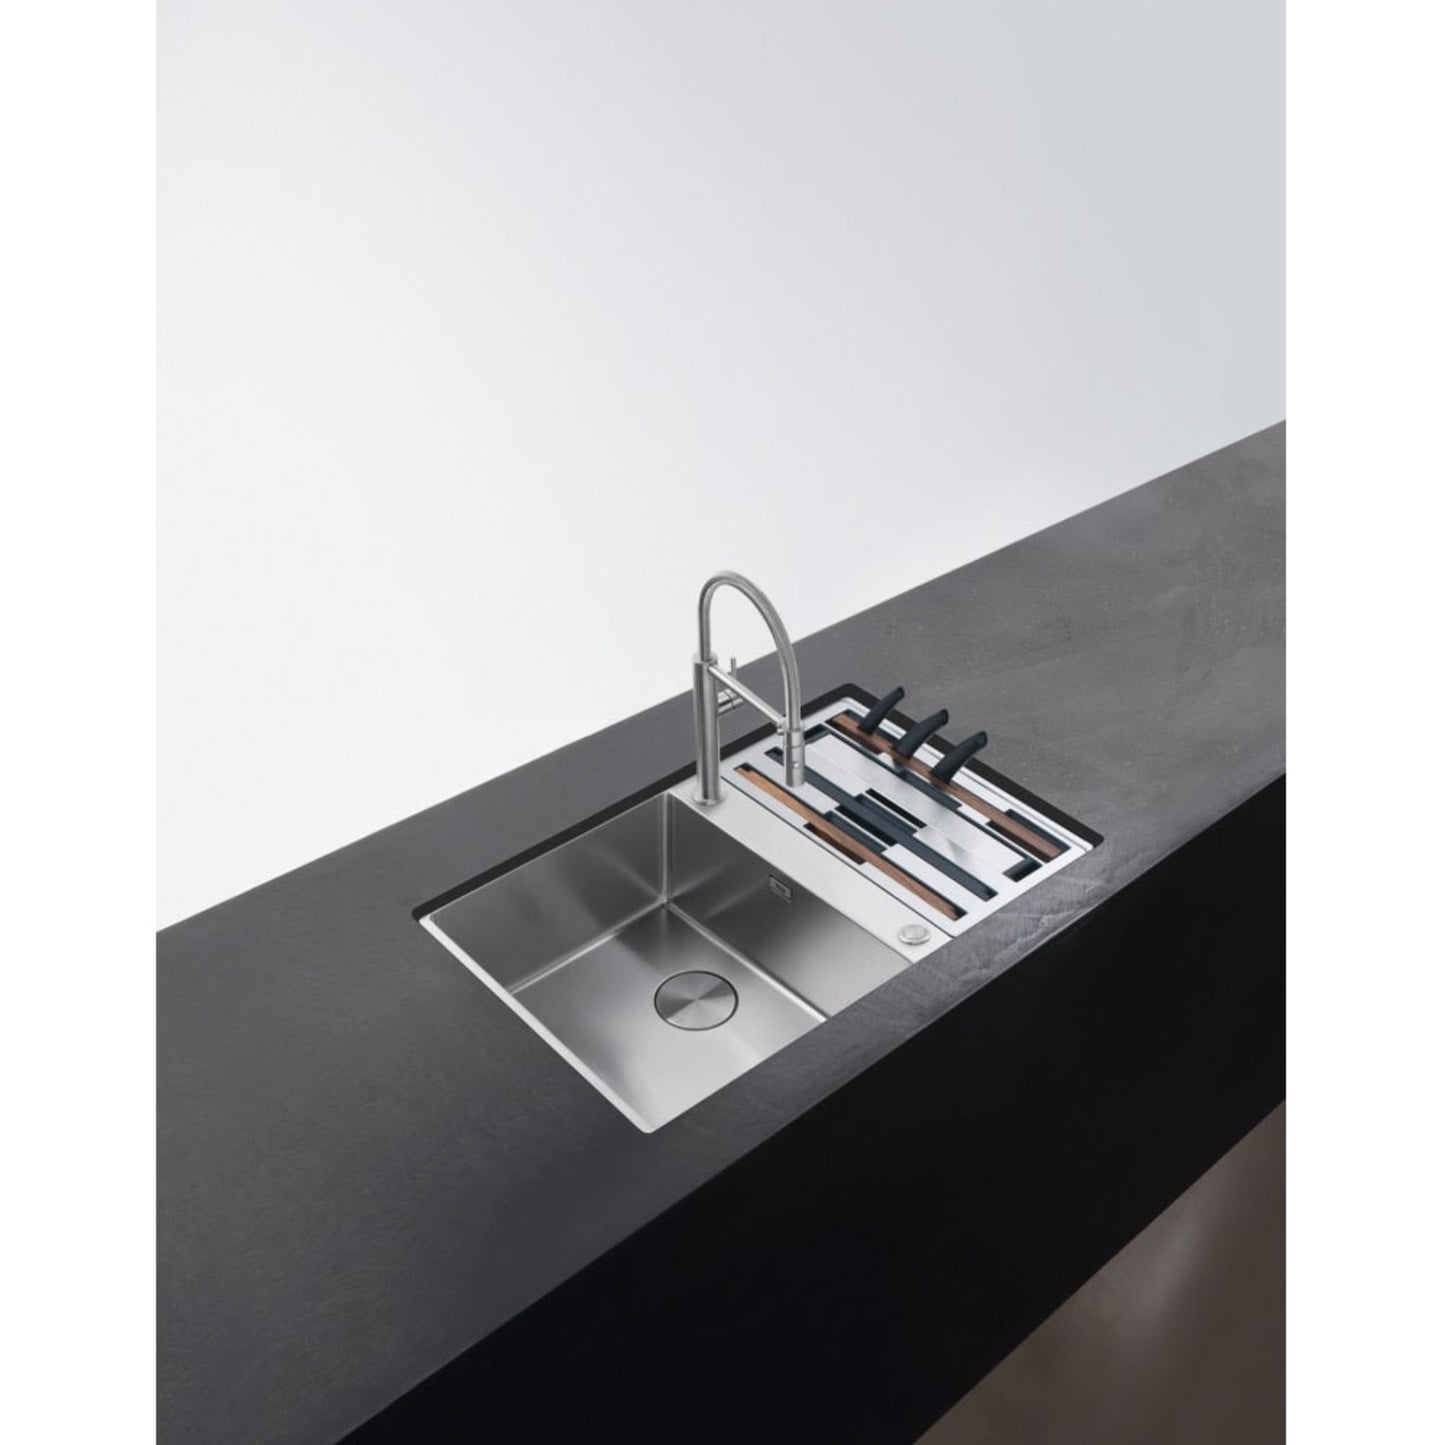 Franke Box Center 41-27 Undermount Stainless Steel sink 1.5 Bowl & Accessories Set - REVERSIBLE lifestyle image black worktop minimalist kitchen